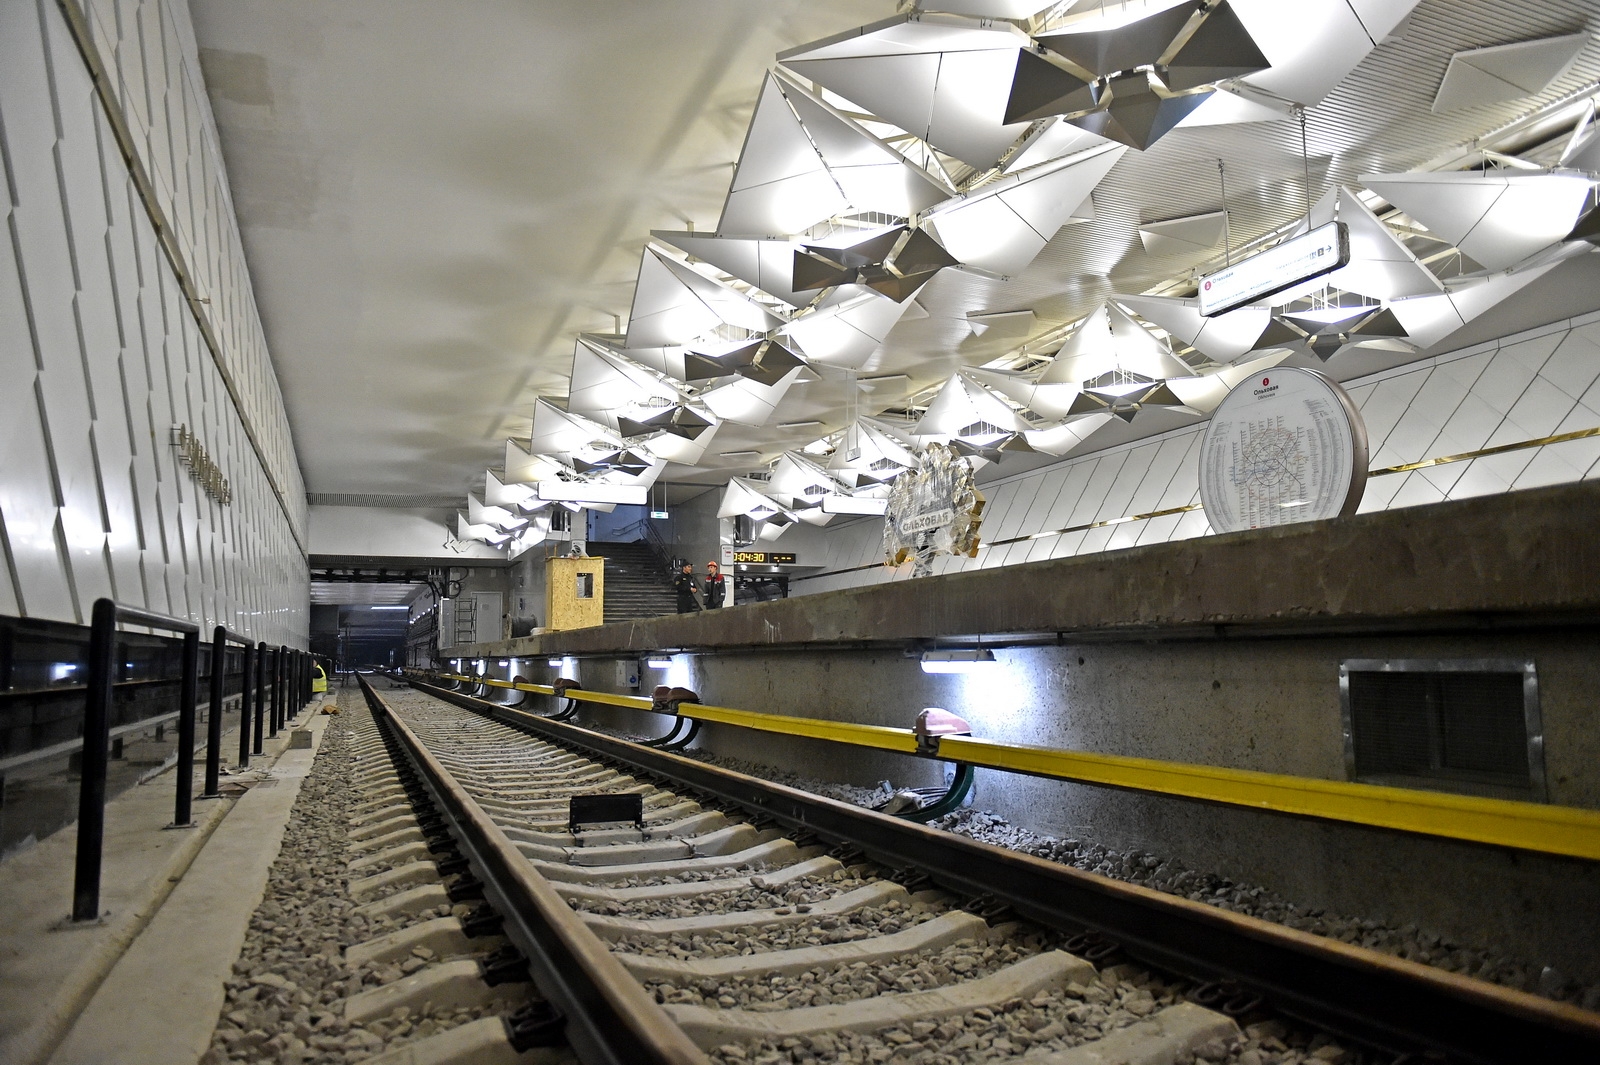 Станции метро сокольнической линии